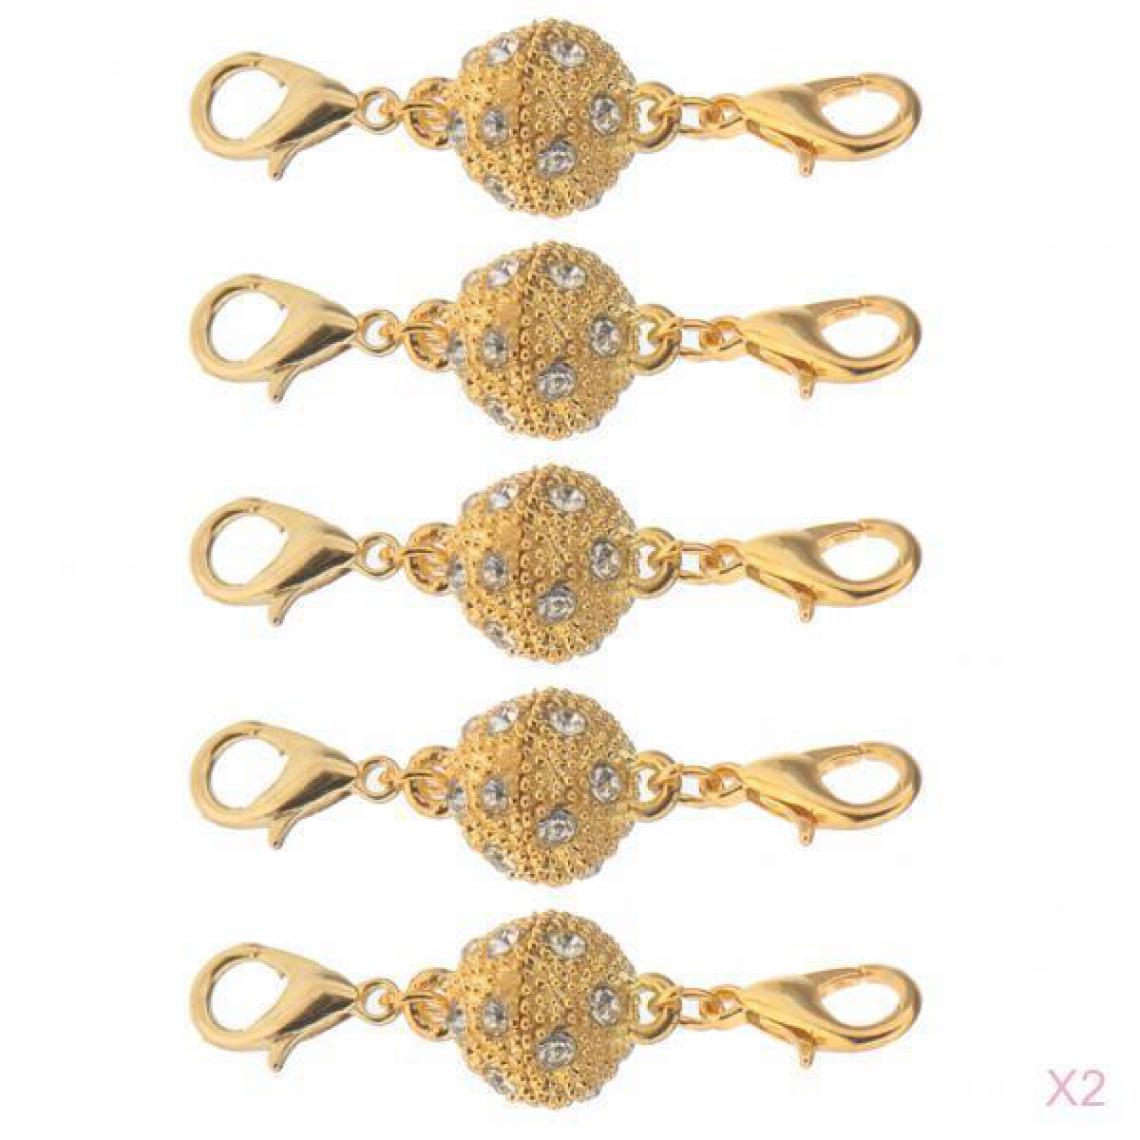 marque generique - 10 Pièces En Laiton Fermoir Magnétique Bricolage Collier Bracelet Fabrication de Bijoux Couleur Dorée - Perles